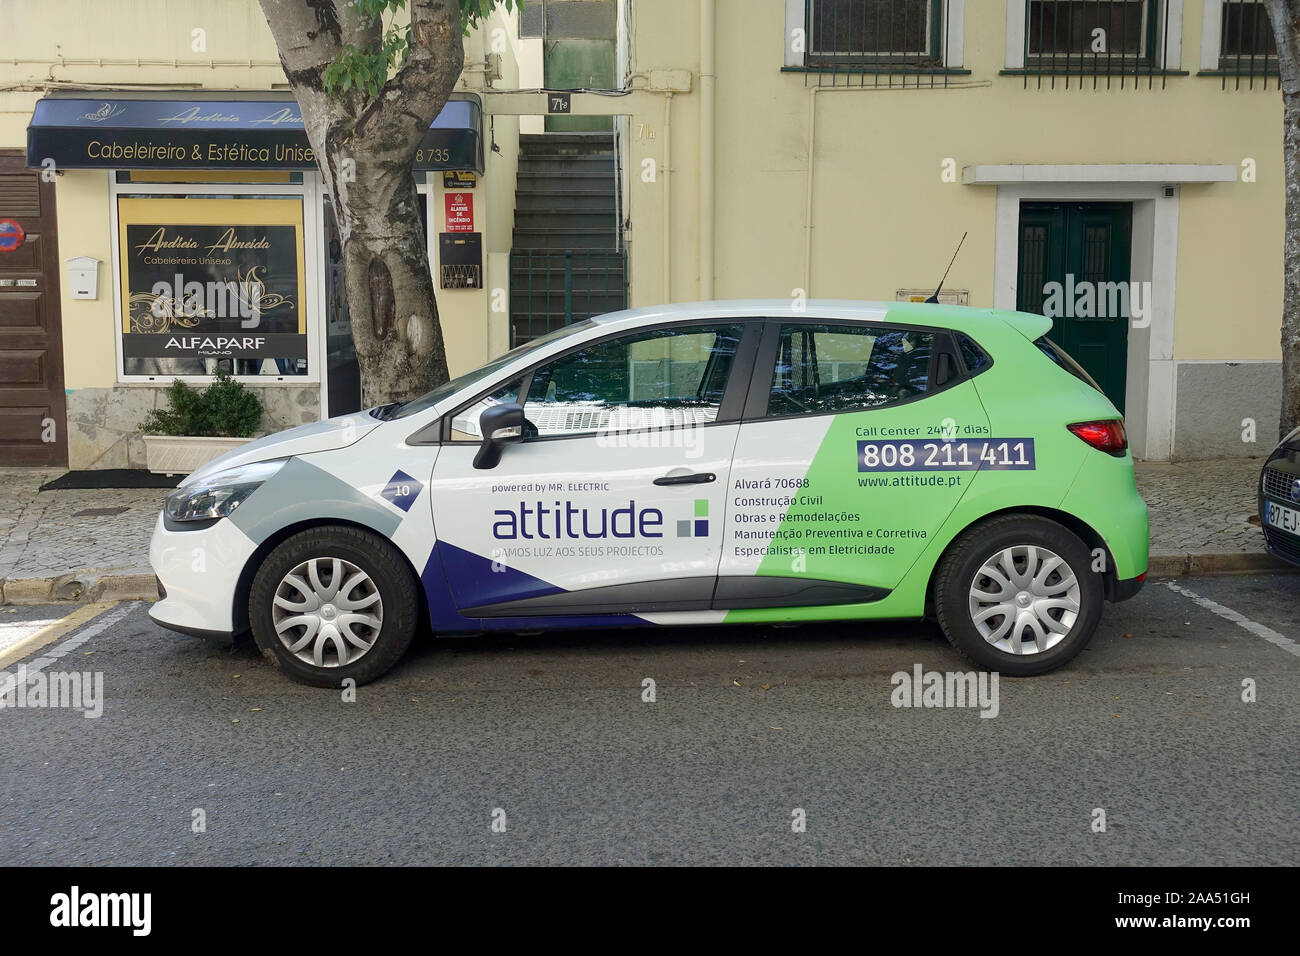 Renault Clio voiture avec l'ATTITUDE SA MARQUE D'UN GROUPE Société de services immobiliers au Portugal Banque D'Images